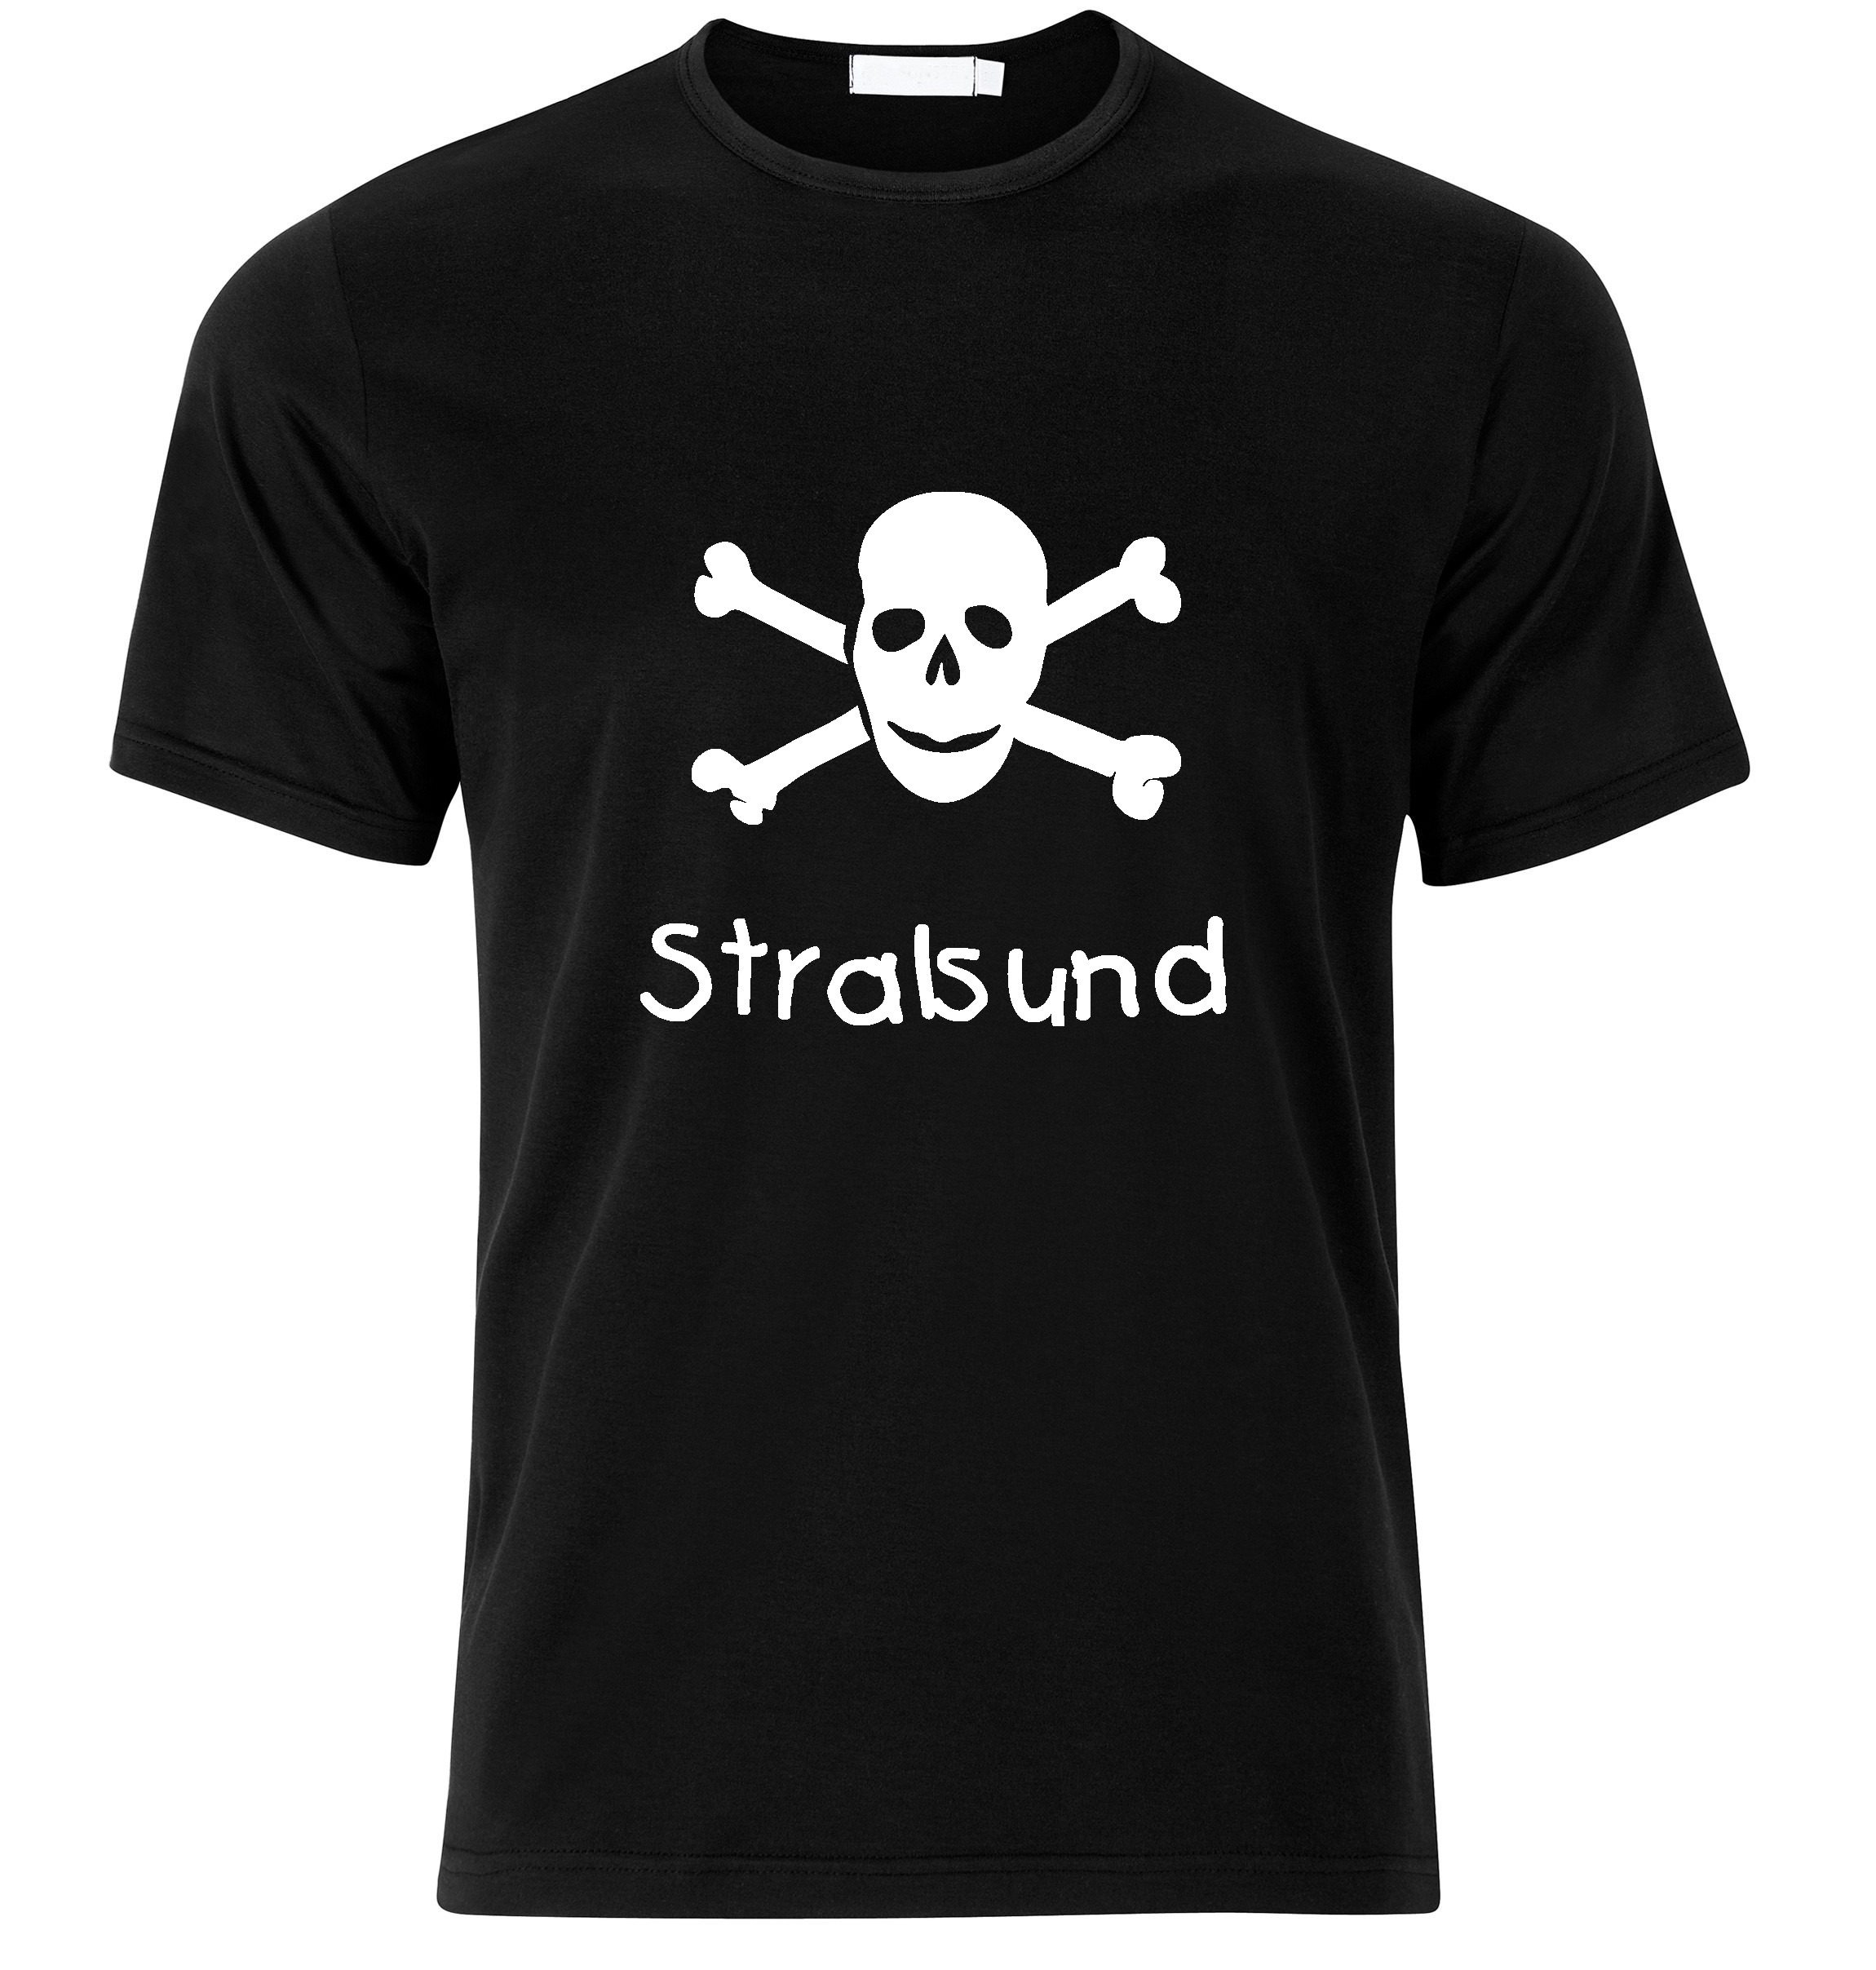 T-Shirt Stralsund Jolly Roger, Totenkopf